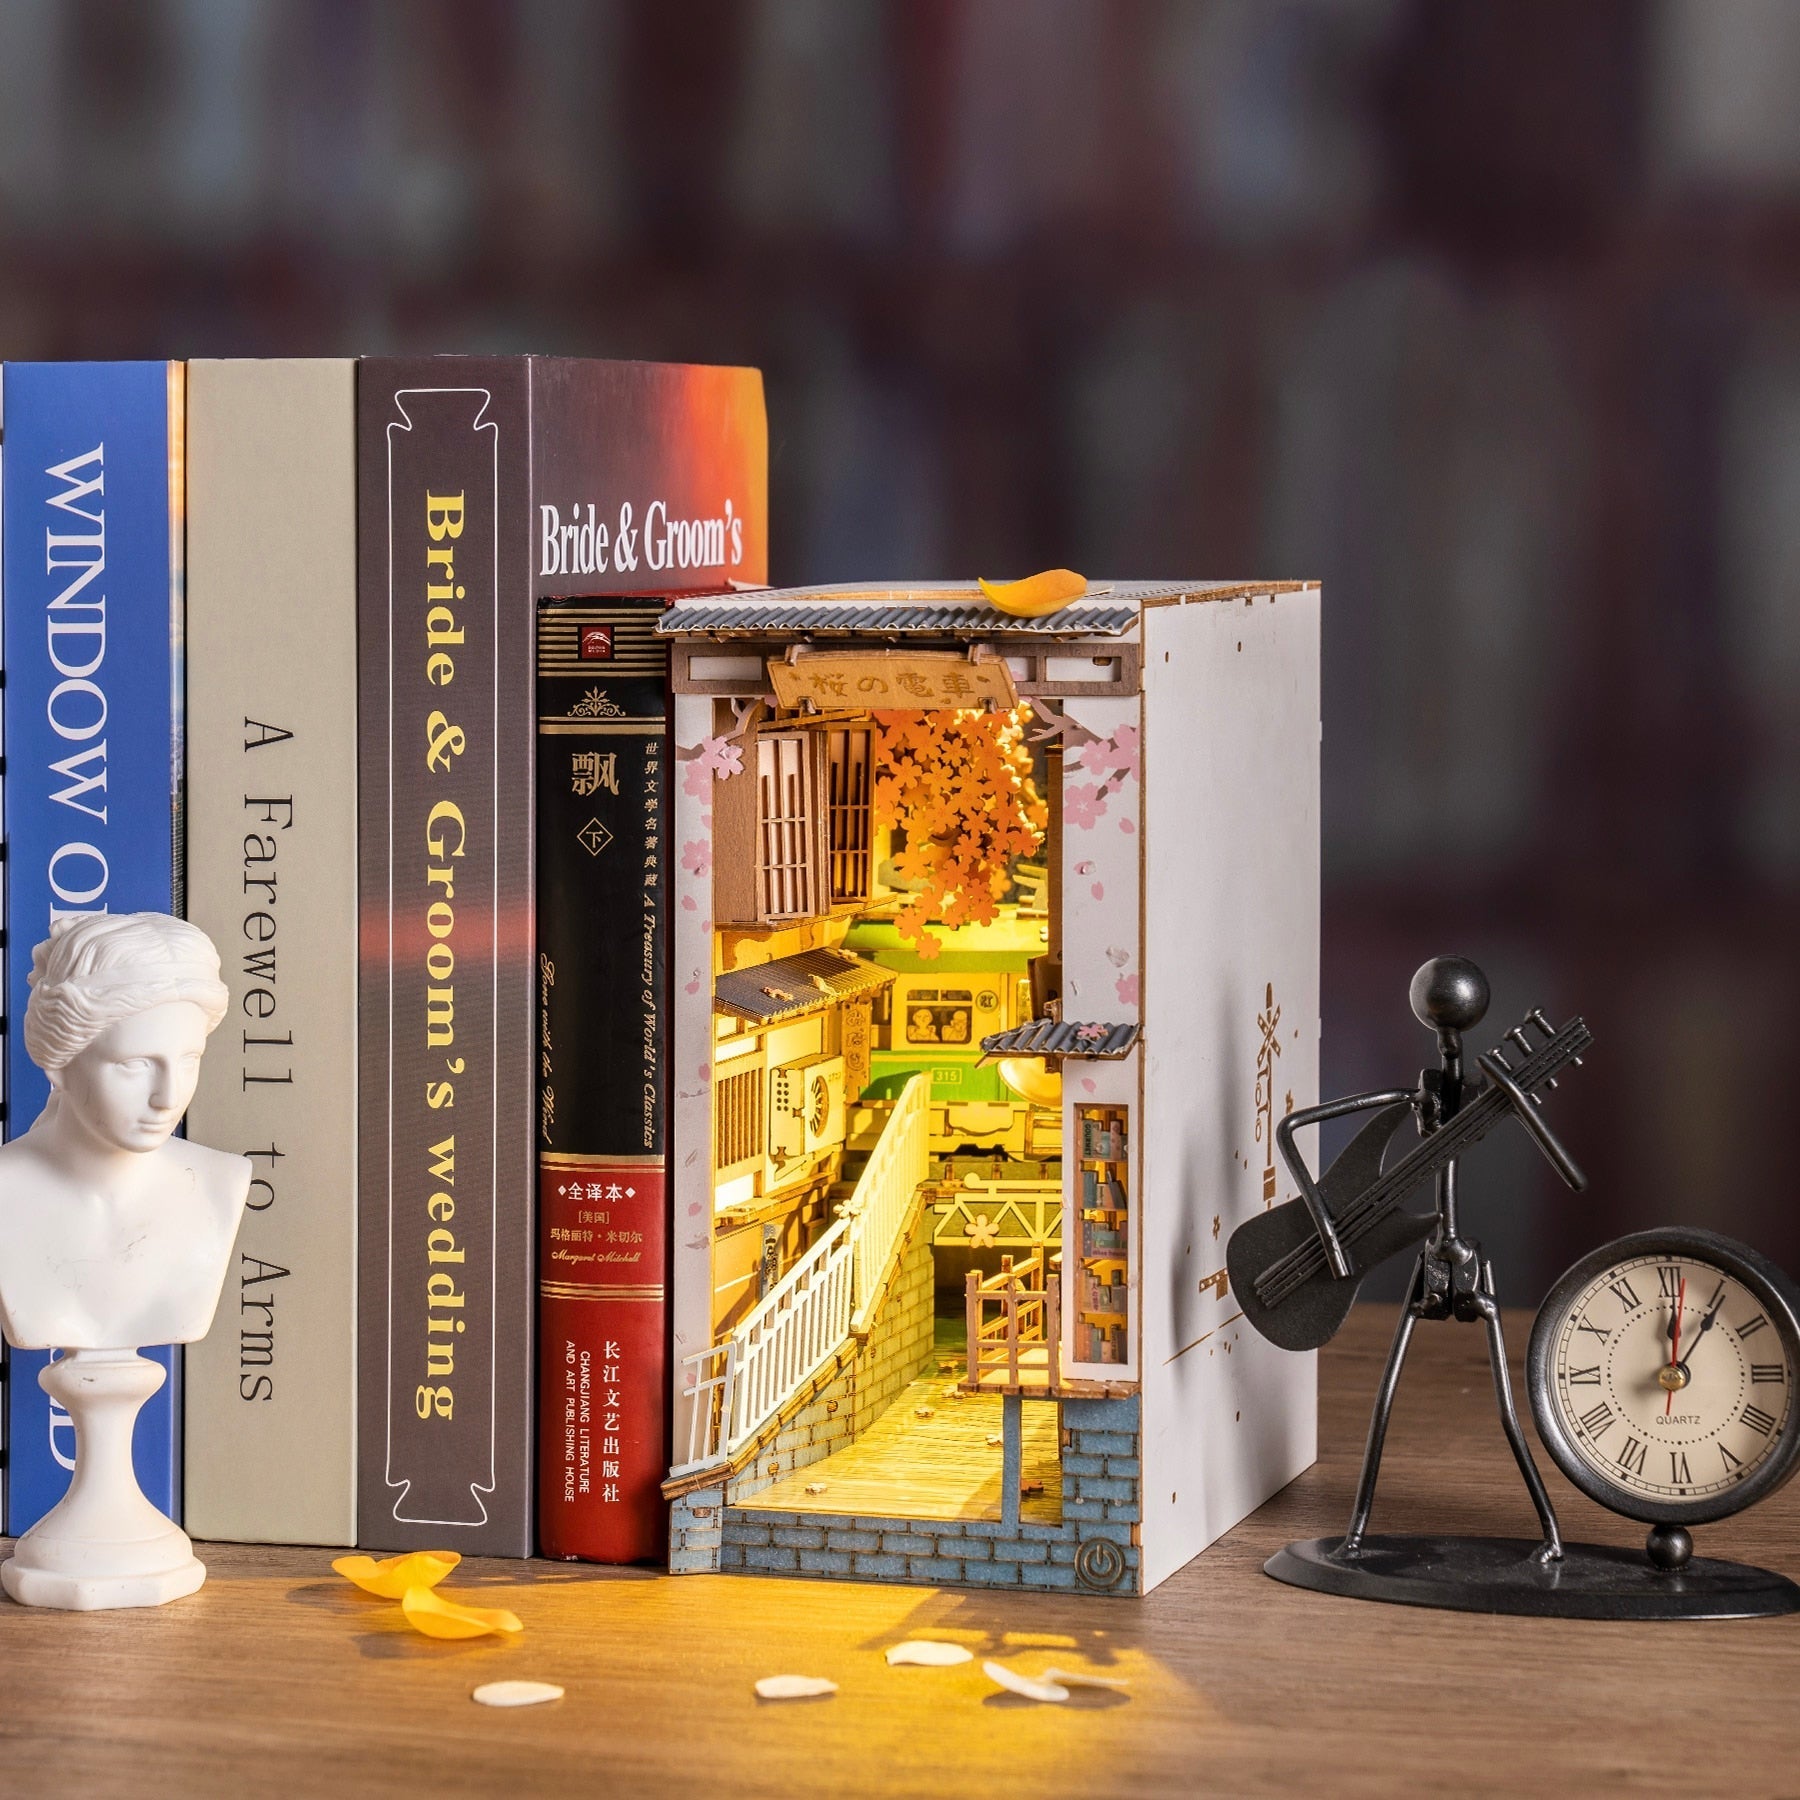 Harry Potter Inspired Book Nook or DIY Kit 